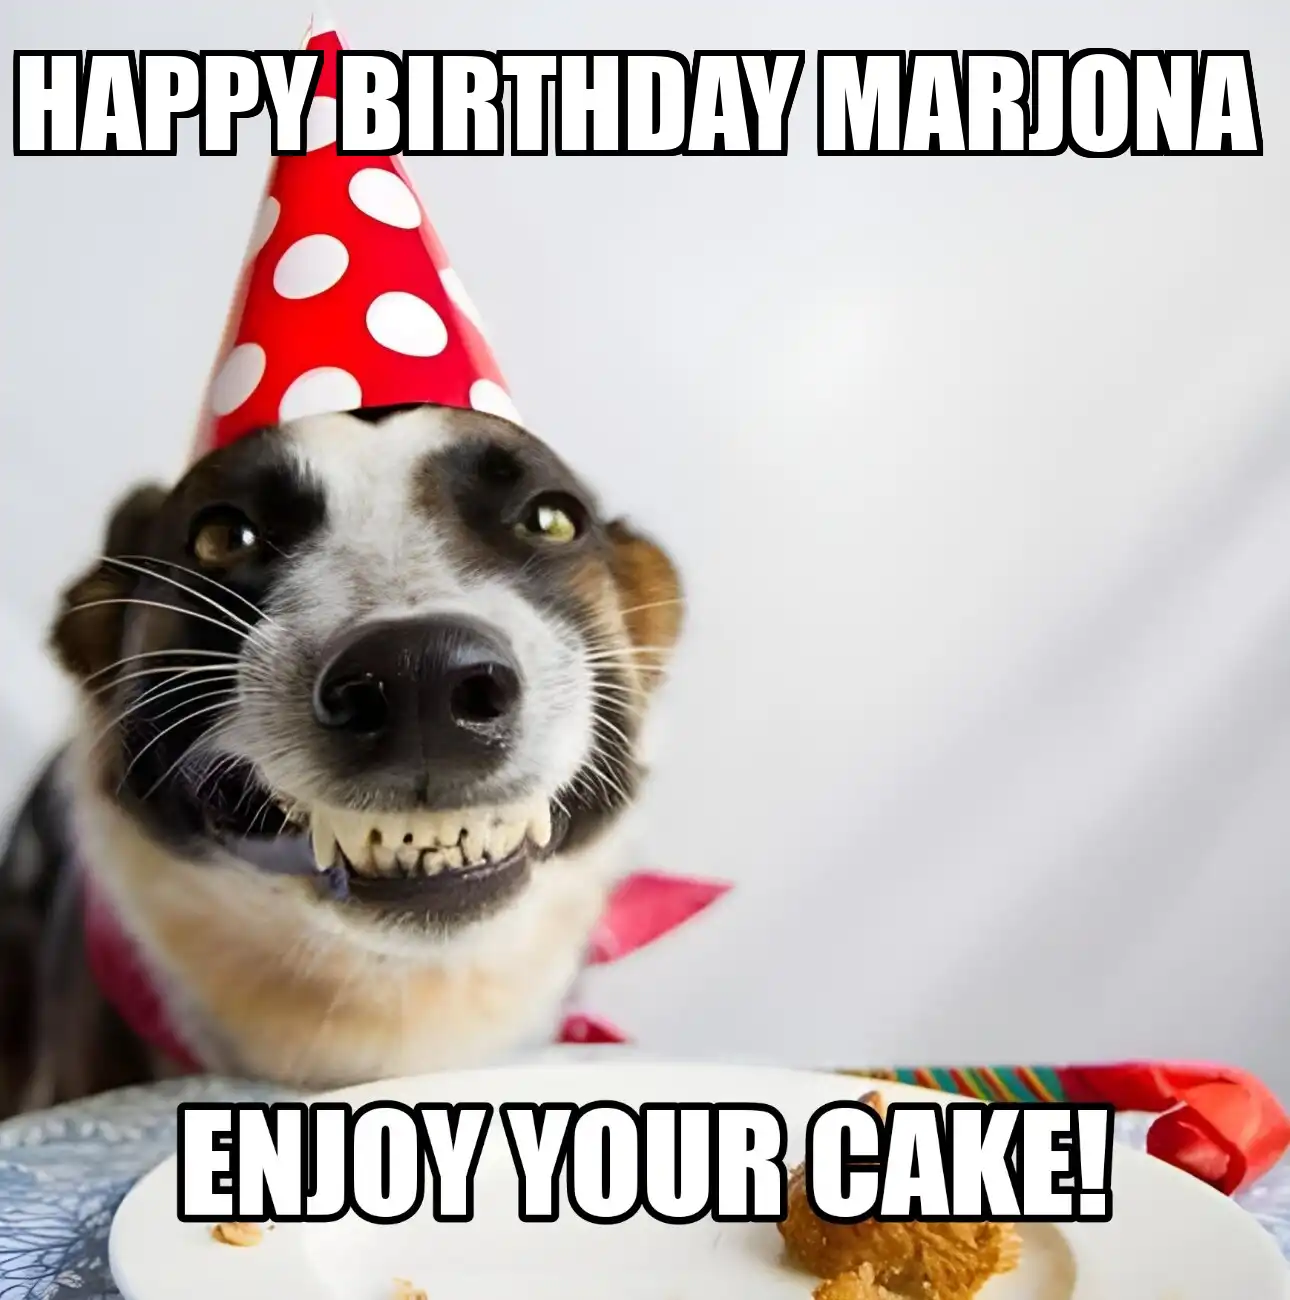 Happy Birthday Marjona Enjoy Your Cake Dog Meme